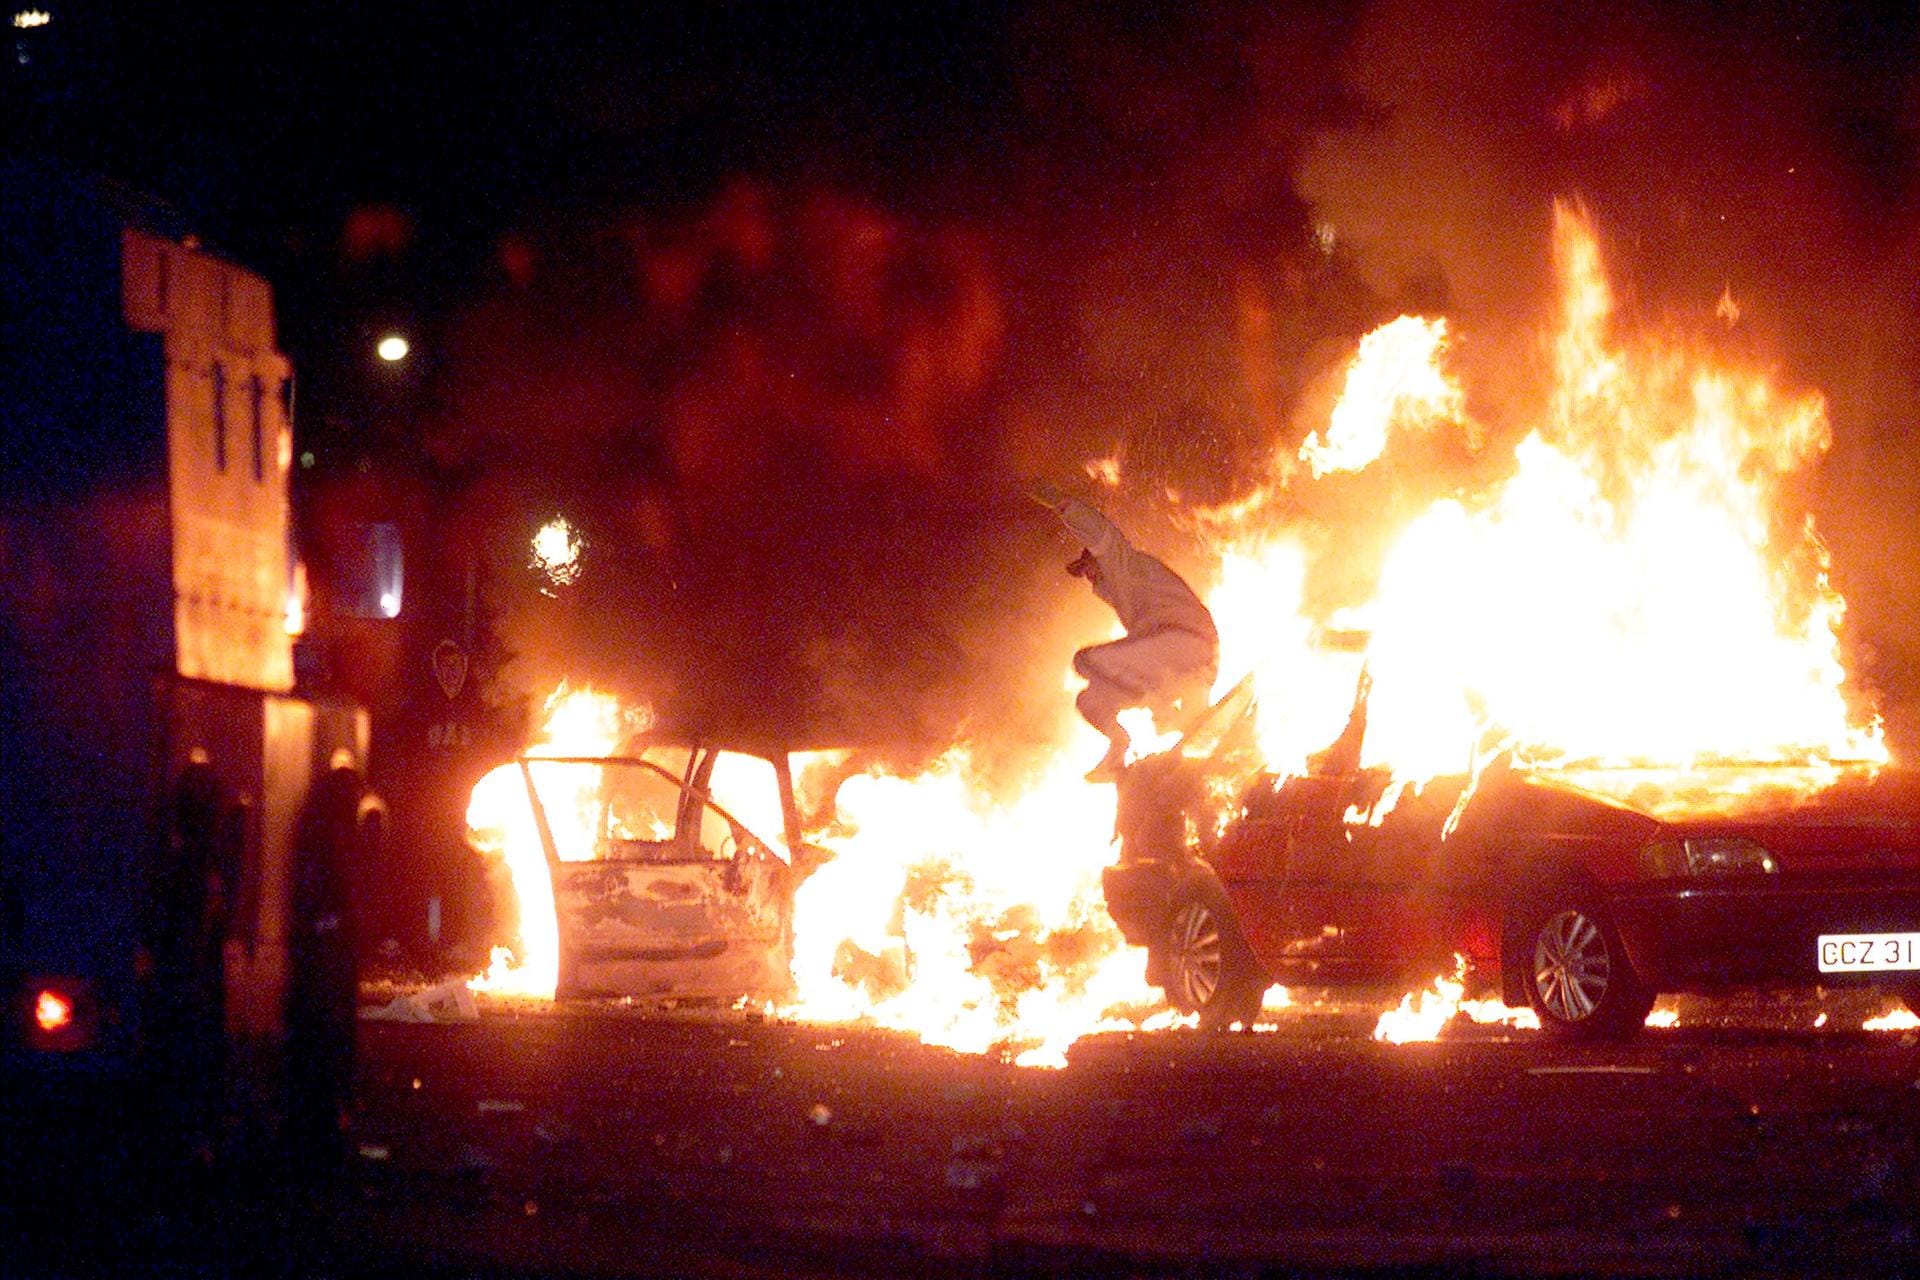 Gewaltausbrüche im Jahr 2002: Ein Mann springt über ein brennendes Auto. Zuvor waren Konflikte zwischen ethnisch-religiösen Gruppen wieder aufgeflammt.